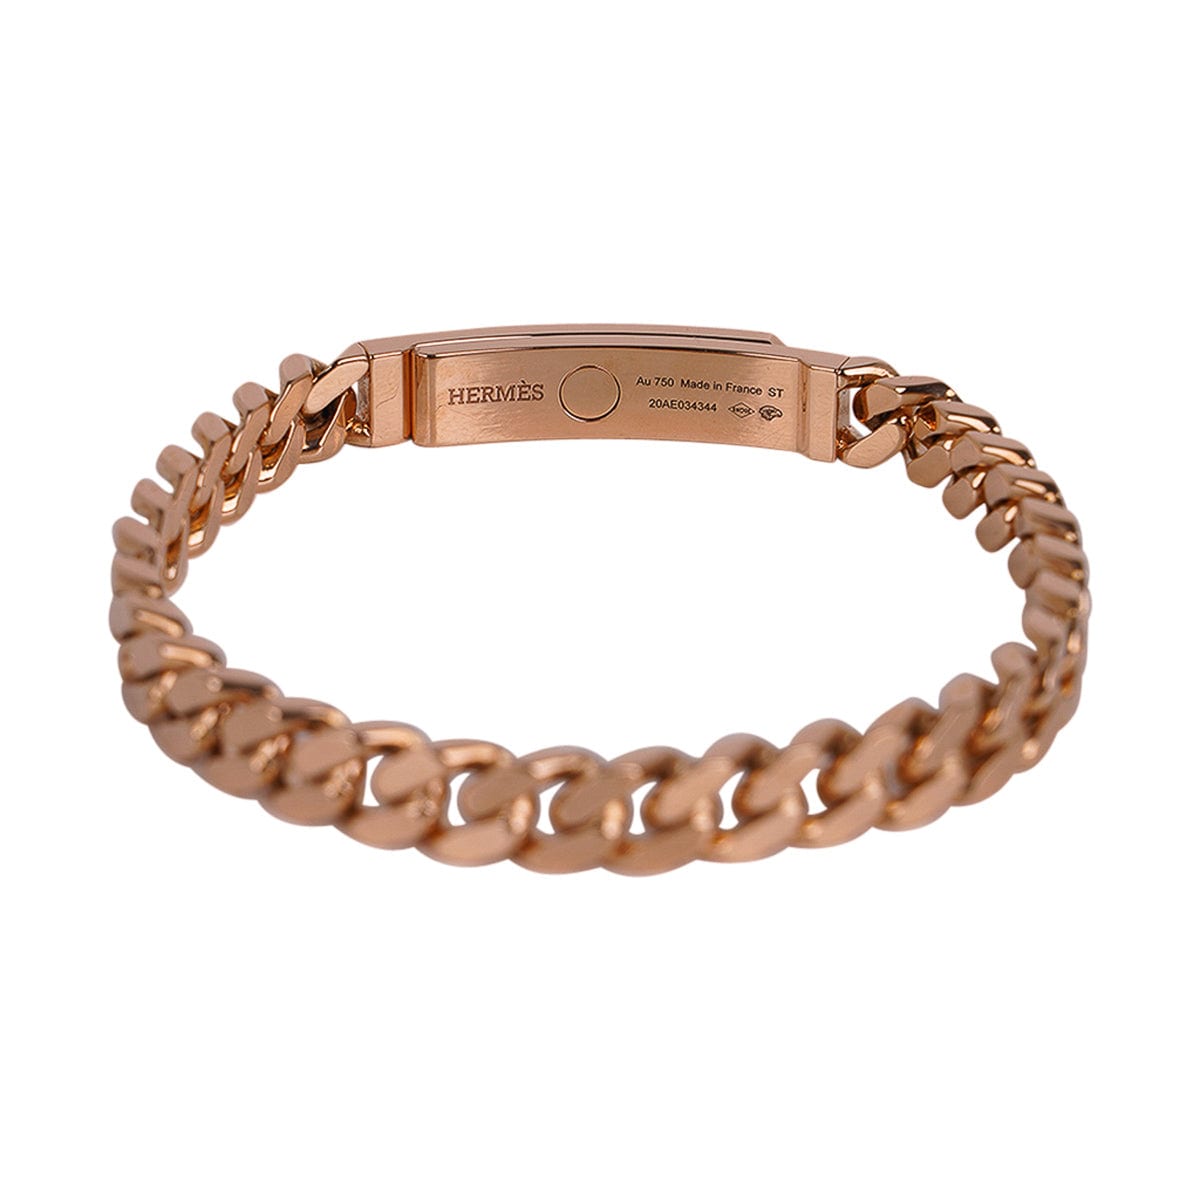 Hermes Bracelet Birkin - 3 For Sale on 1stDibs  hermes birkin bracelet, bracelet  birkin hermes